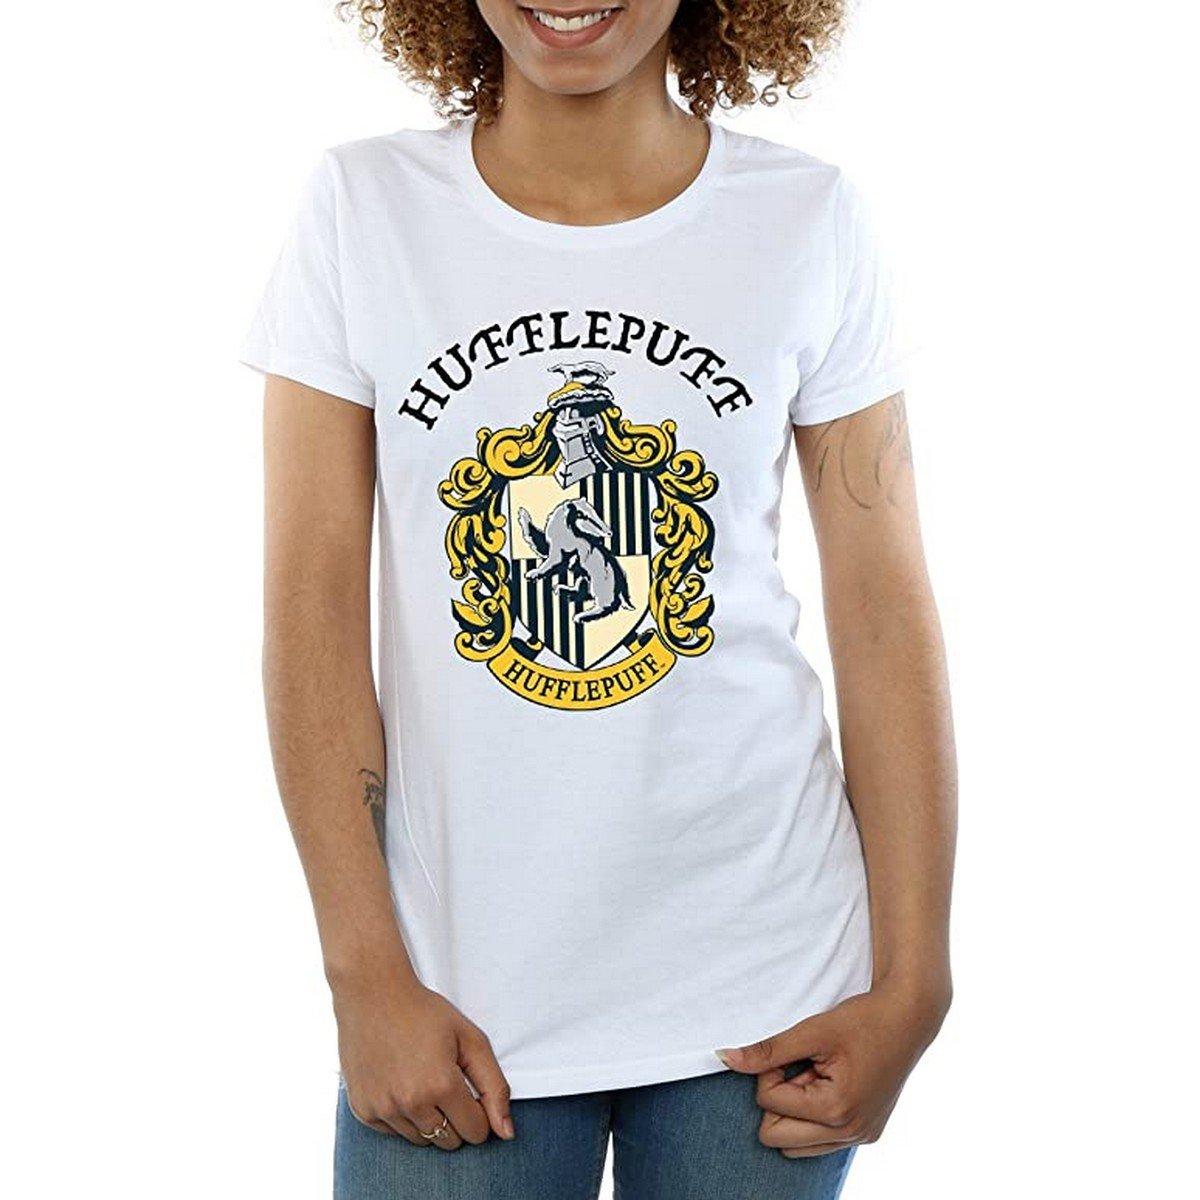 Tshirt Damen Weiss M von Harry Potter